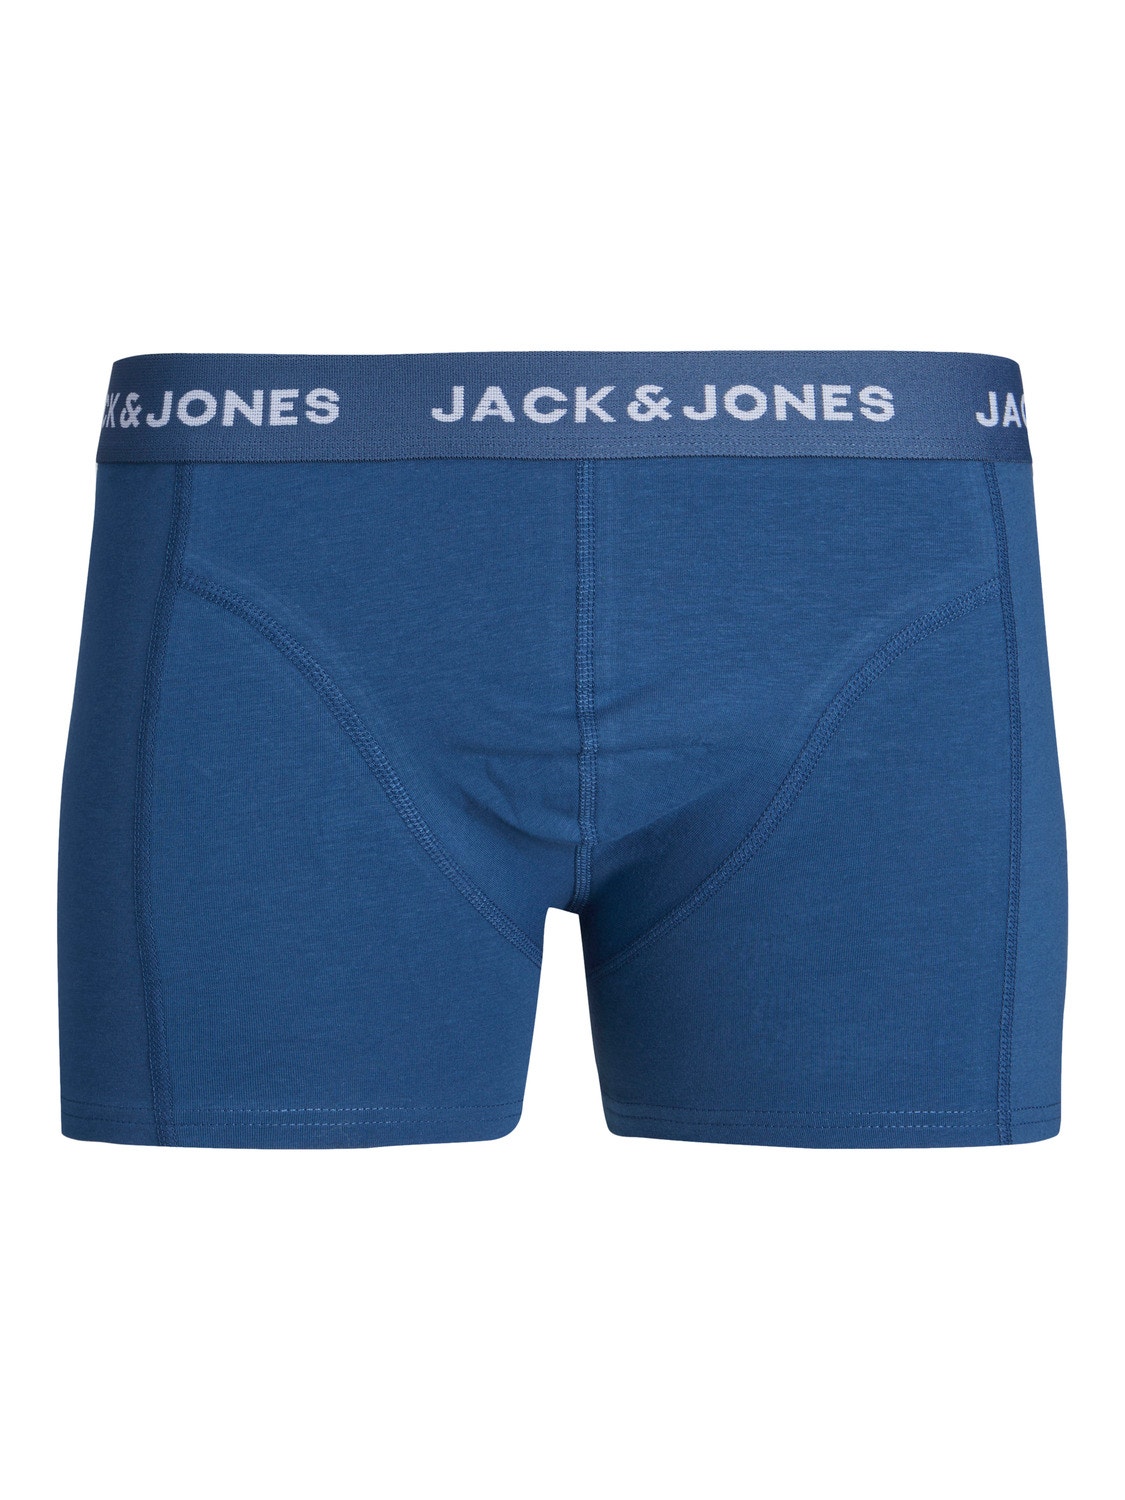 Jack & Jones 3-pack Trunks -Dark Green - 12250206